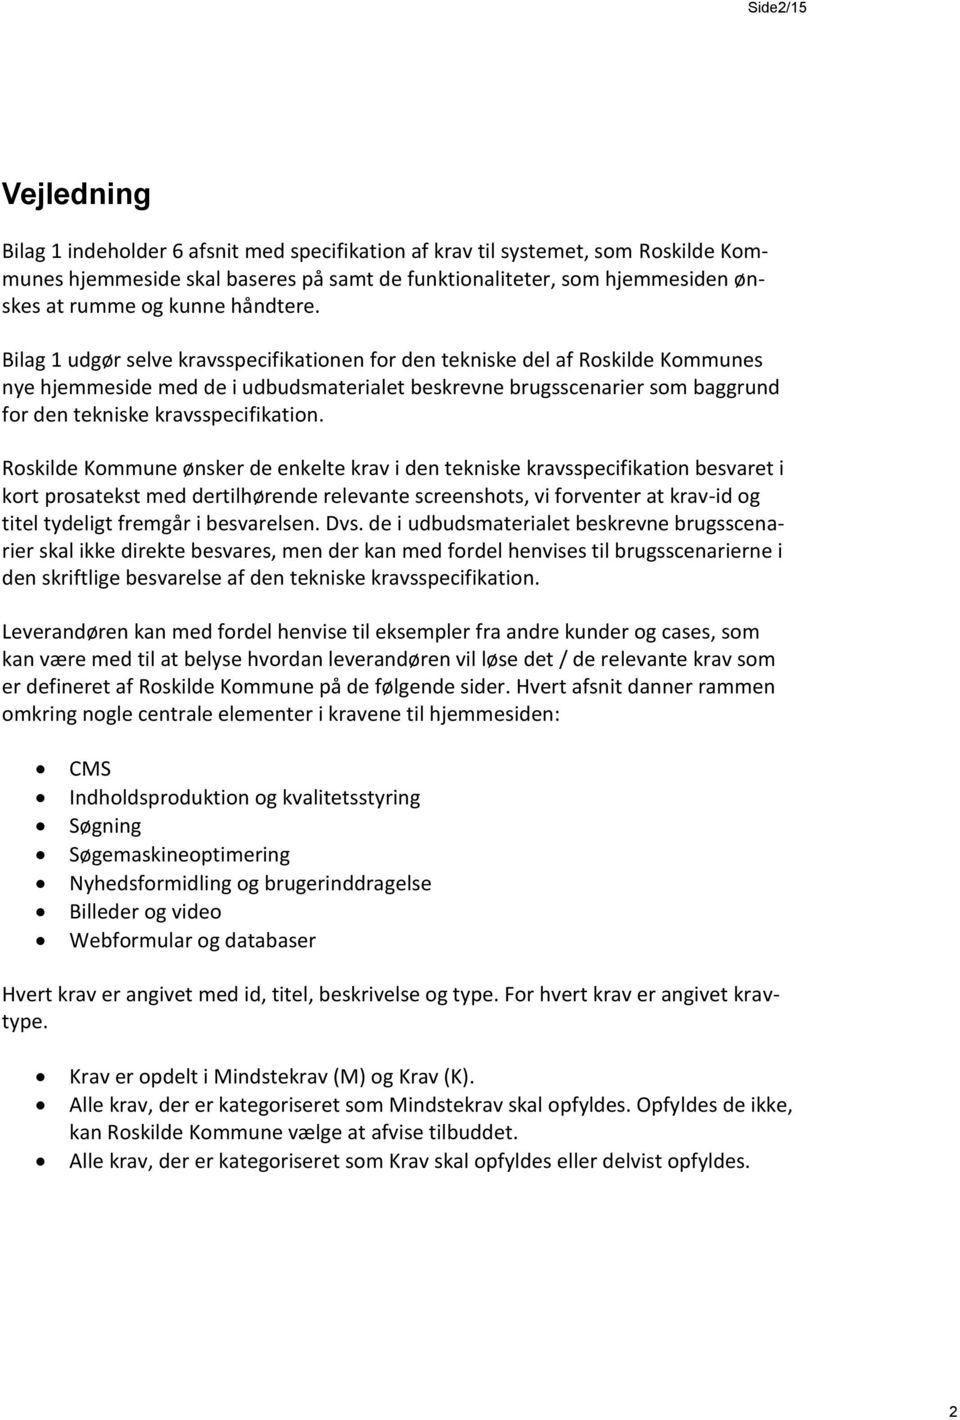 Bilag 1 udgør selve kravsspecifikationen for den tekniske del af Roskilde Kommunes nye hjemmeside med de i udbudsmaterialet beskrevne brugsscenarier som baggrund for den tekniske kravsspecifikation.